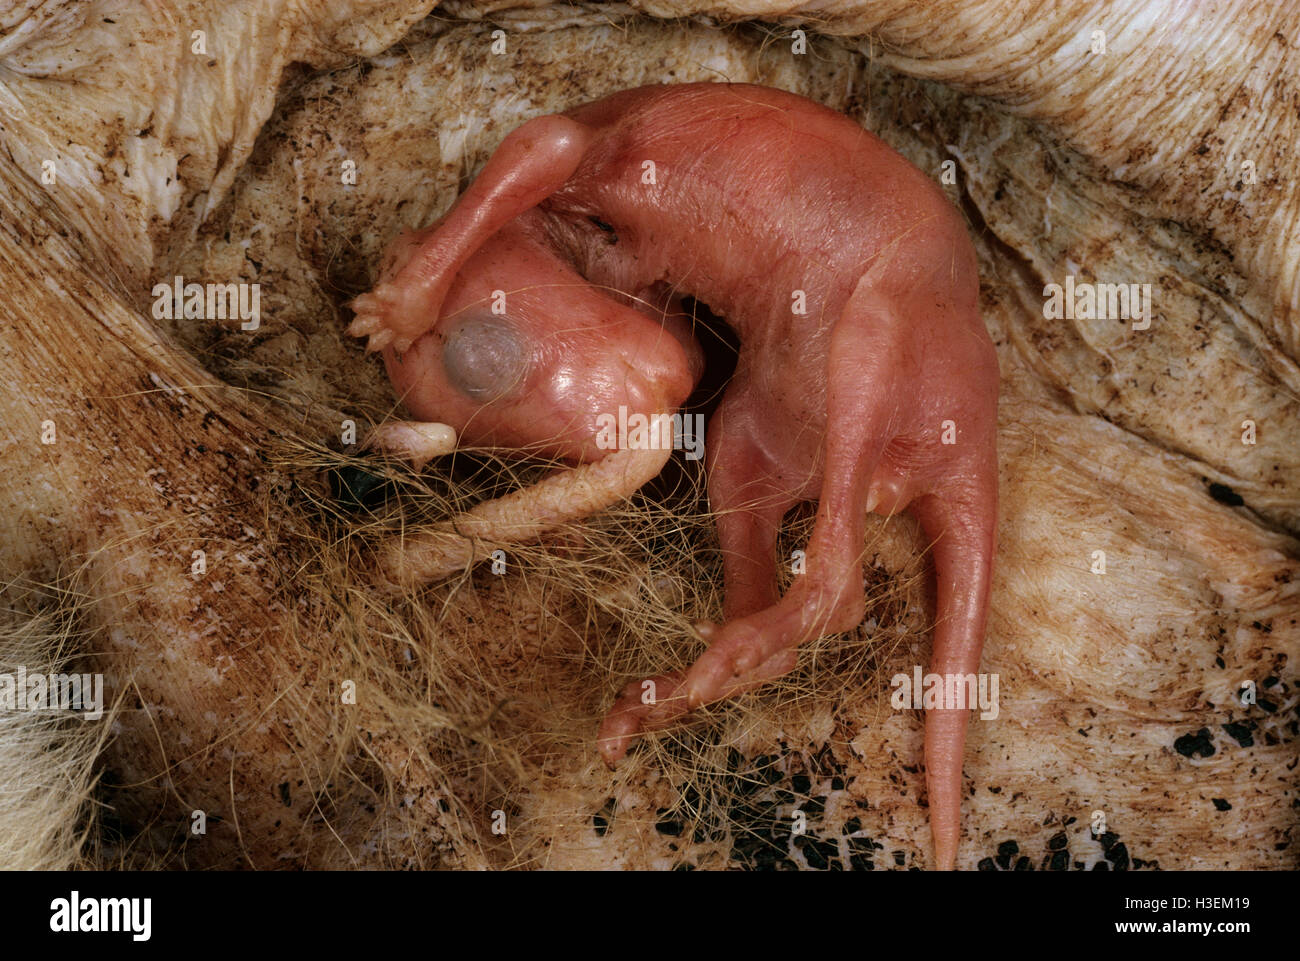 Macropod Reproduktion (Macropus SP.), Neugeborene im Beutel 20 Tage nach der Geburt an Sauger befestigt. Australien Stockfoto